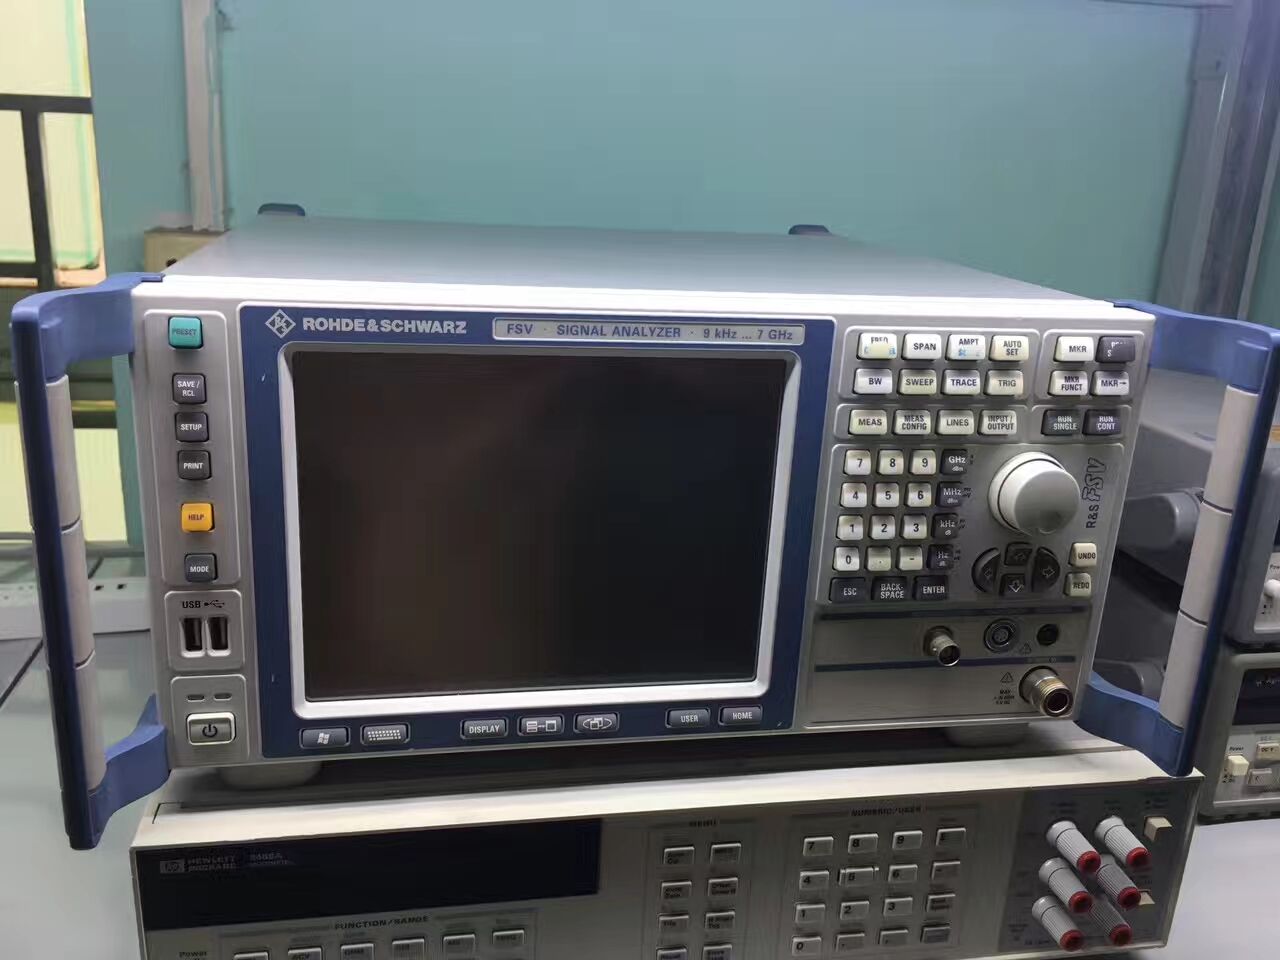 科瑞 频谱分析仪 fsv7频谱分析仪 罗德与施瓦茨频谱分析仪 质量保证示例图1